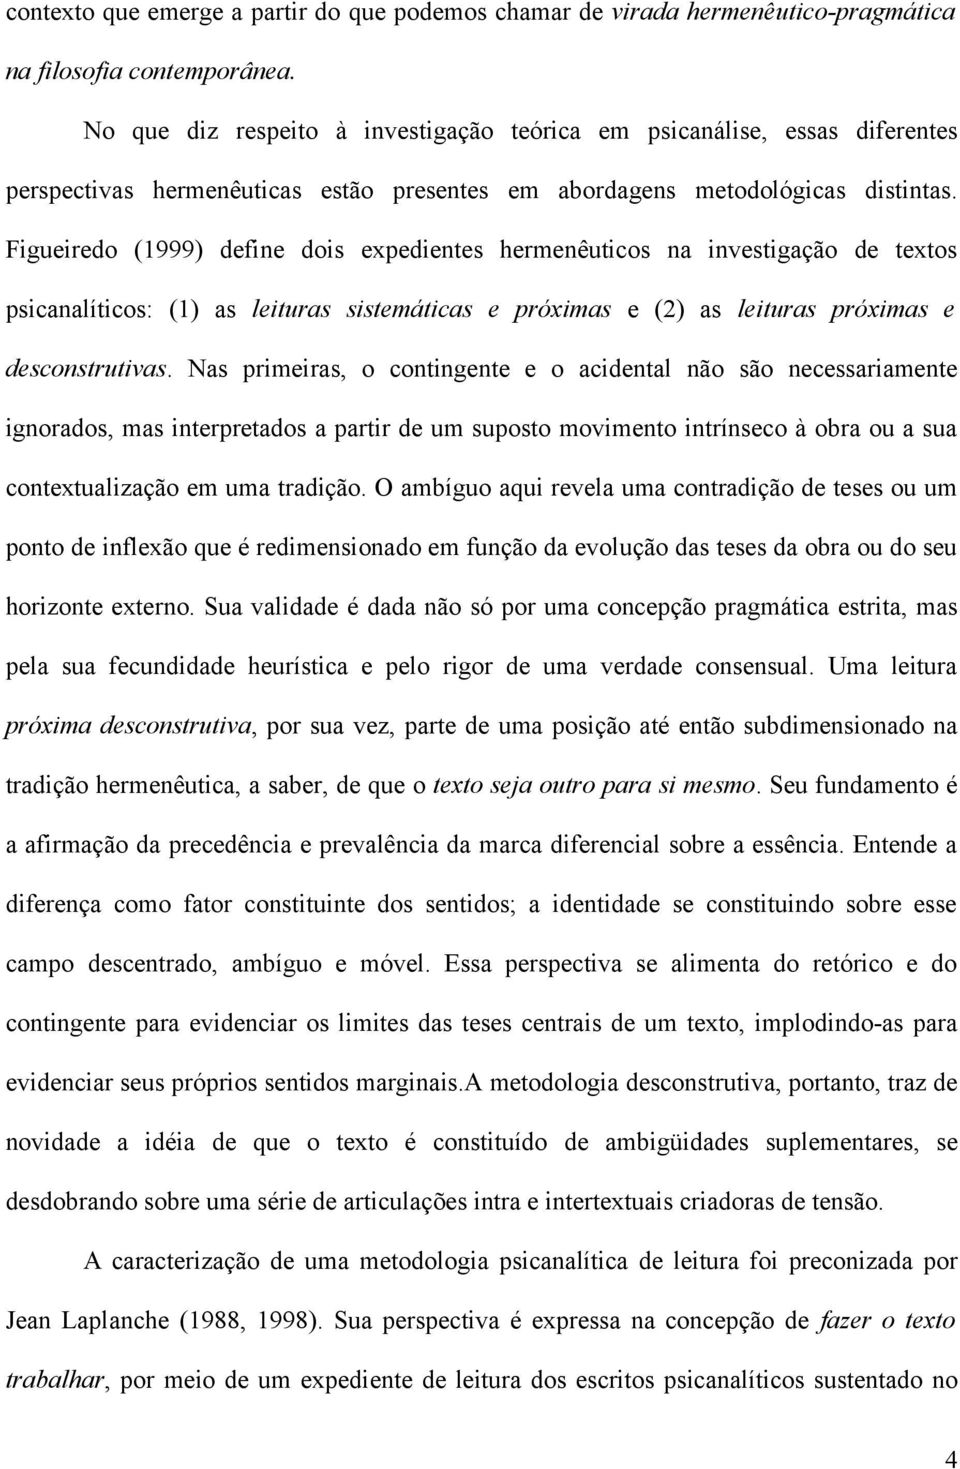 Figueiredo (1999) define dois expedientes hermenêuticos na investigação de textos psicanalíticos: (1) as leituras sistemáticas e próximas e (2) as leituras próximas e desconstrutivas.